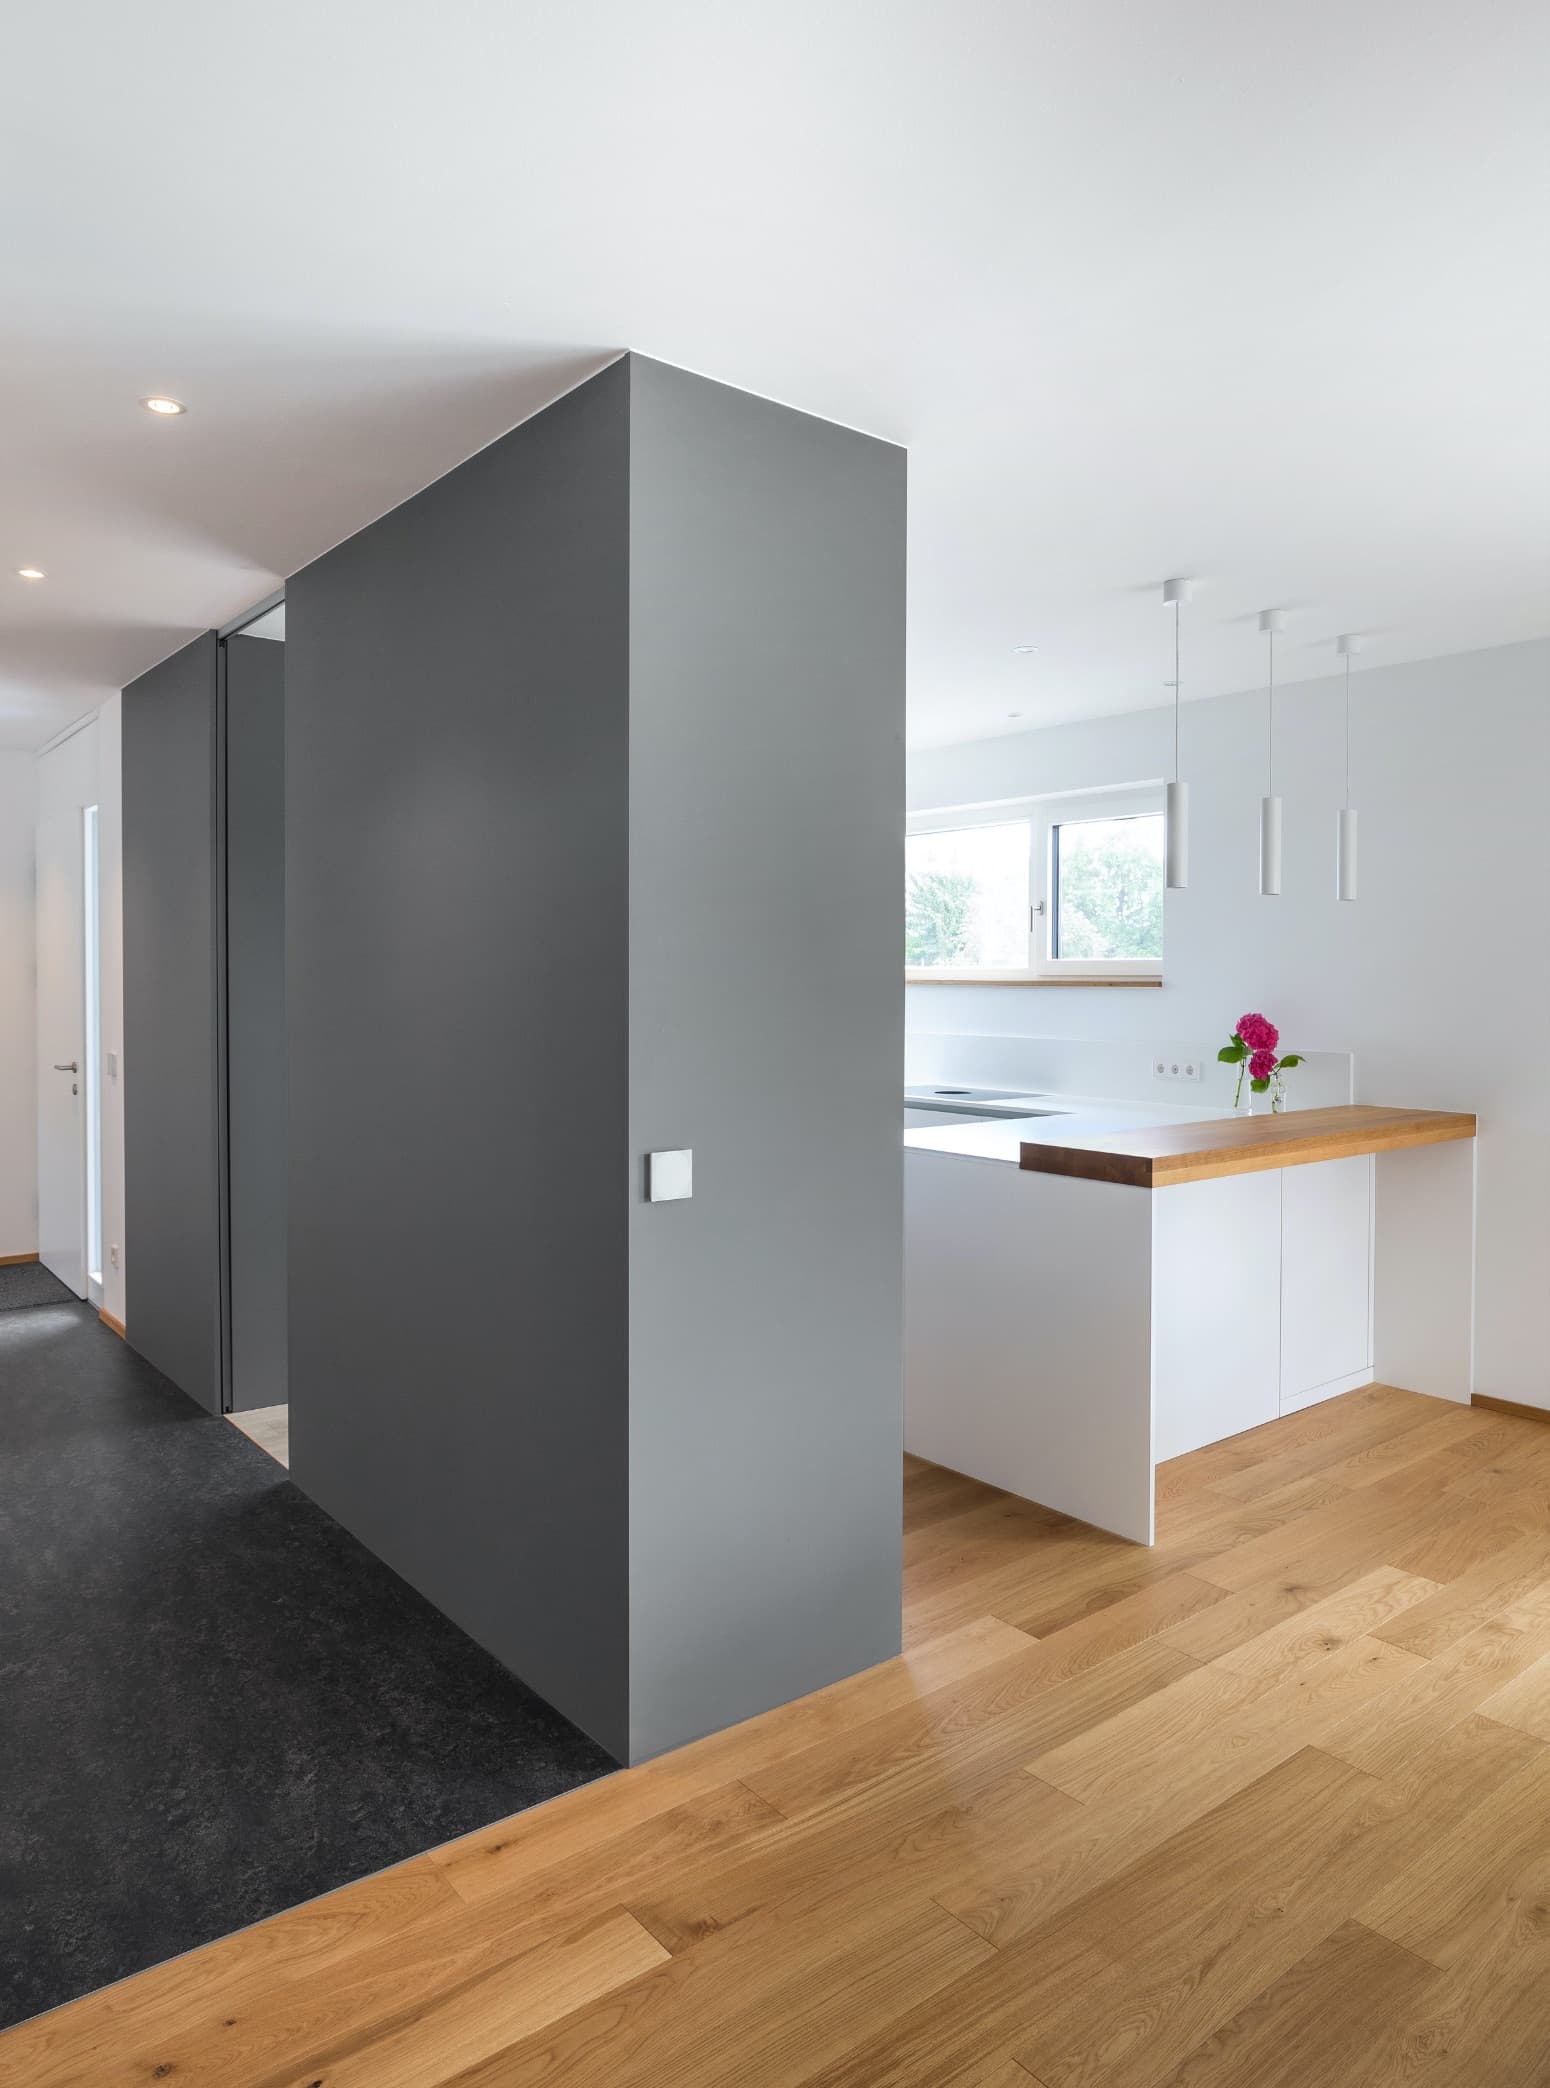 Einbauküche und Trennwand in einem – Struktur und Design für offene Räume